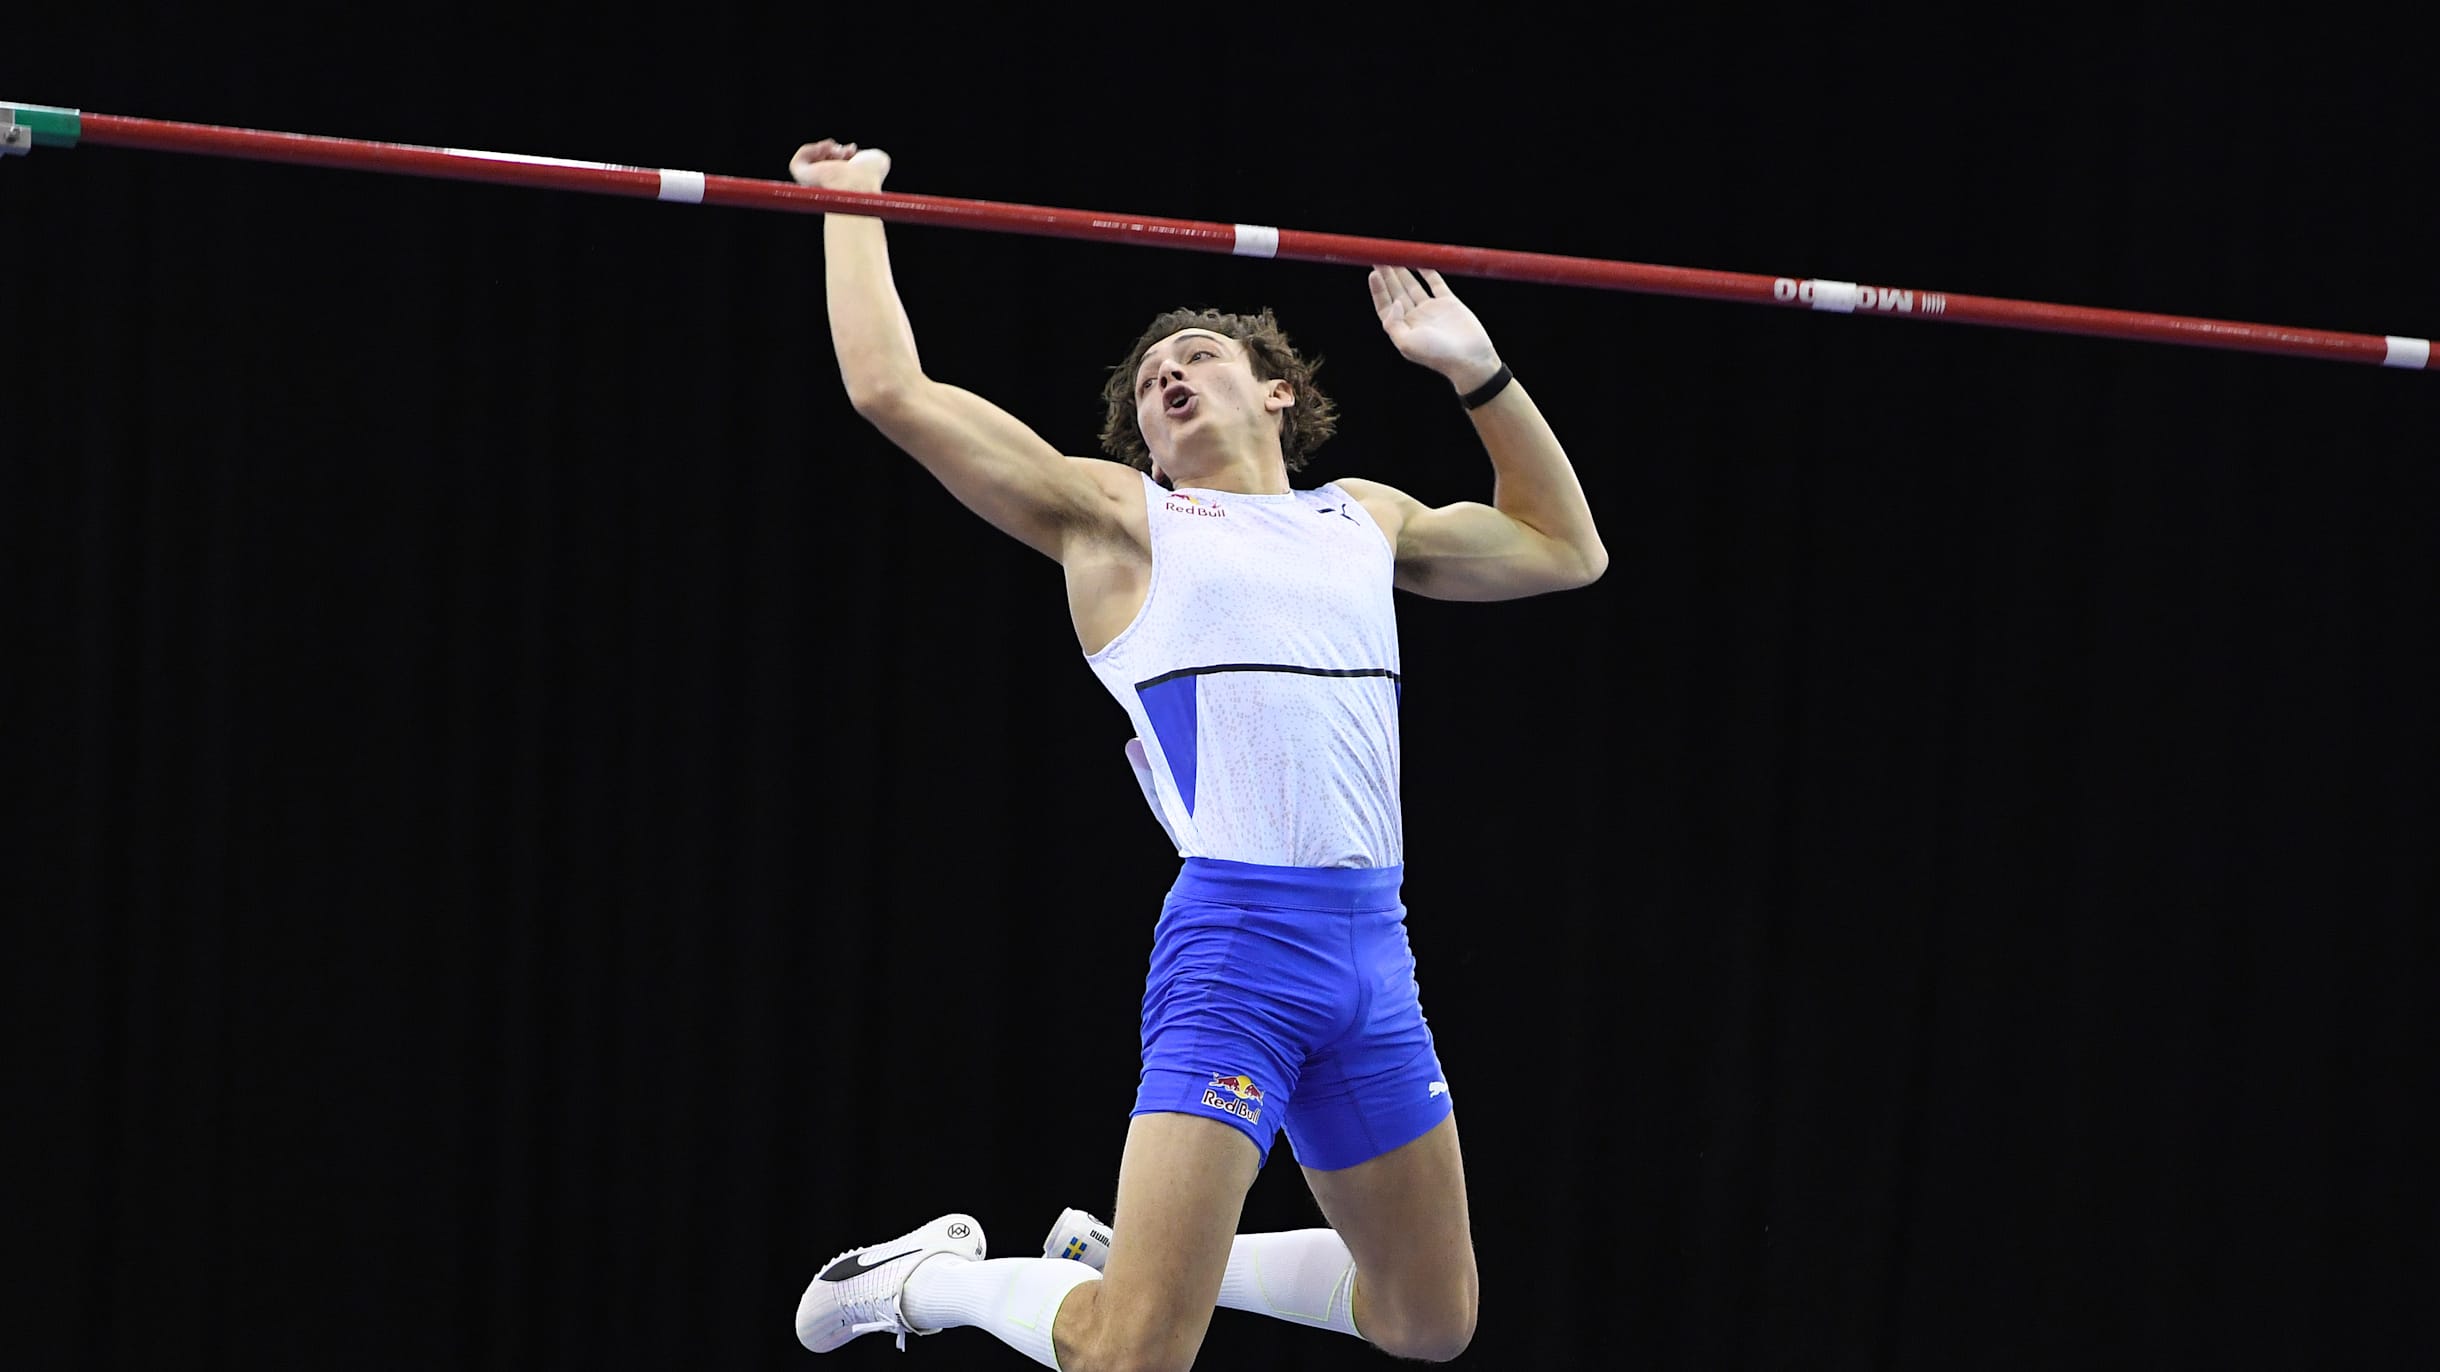 Armand Duplantis quebra recorde e é campeão mundial de salto com vara